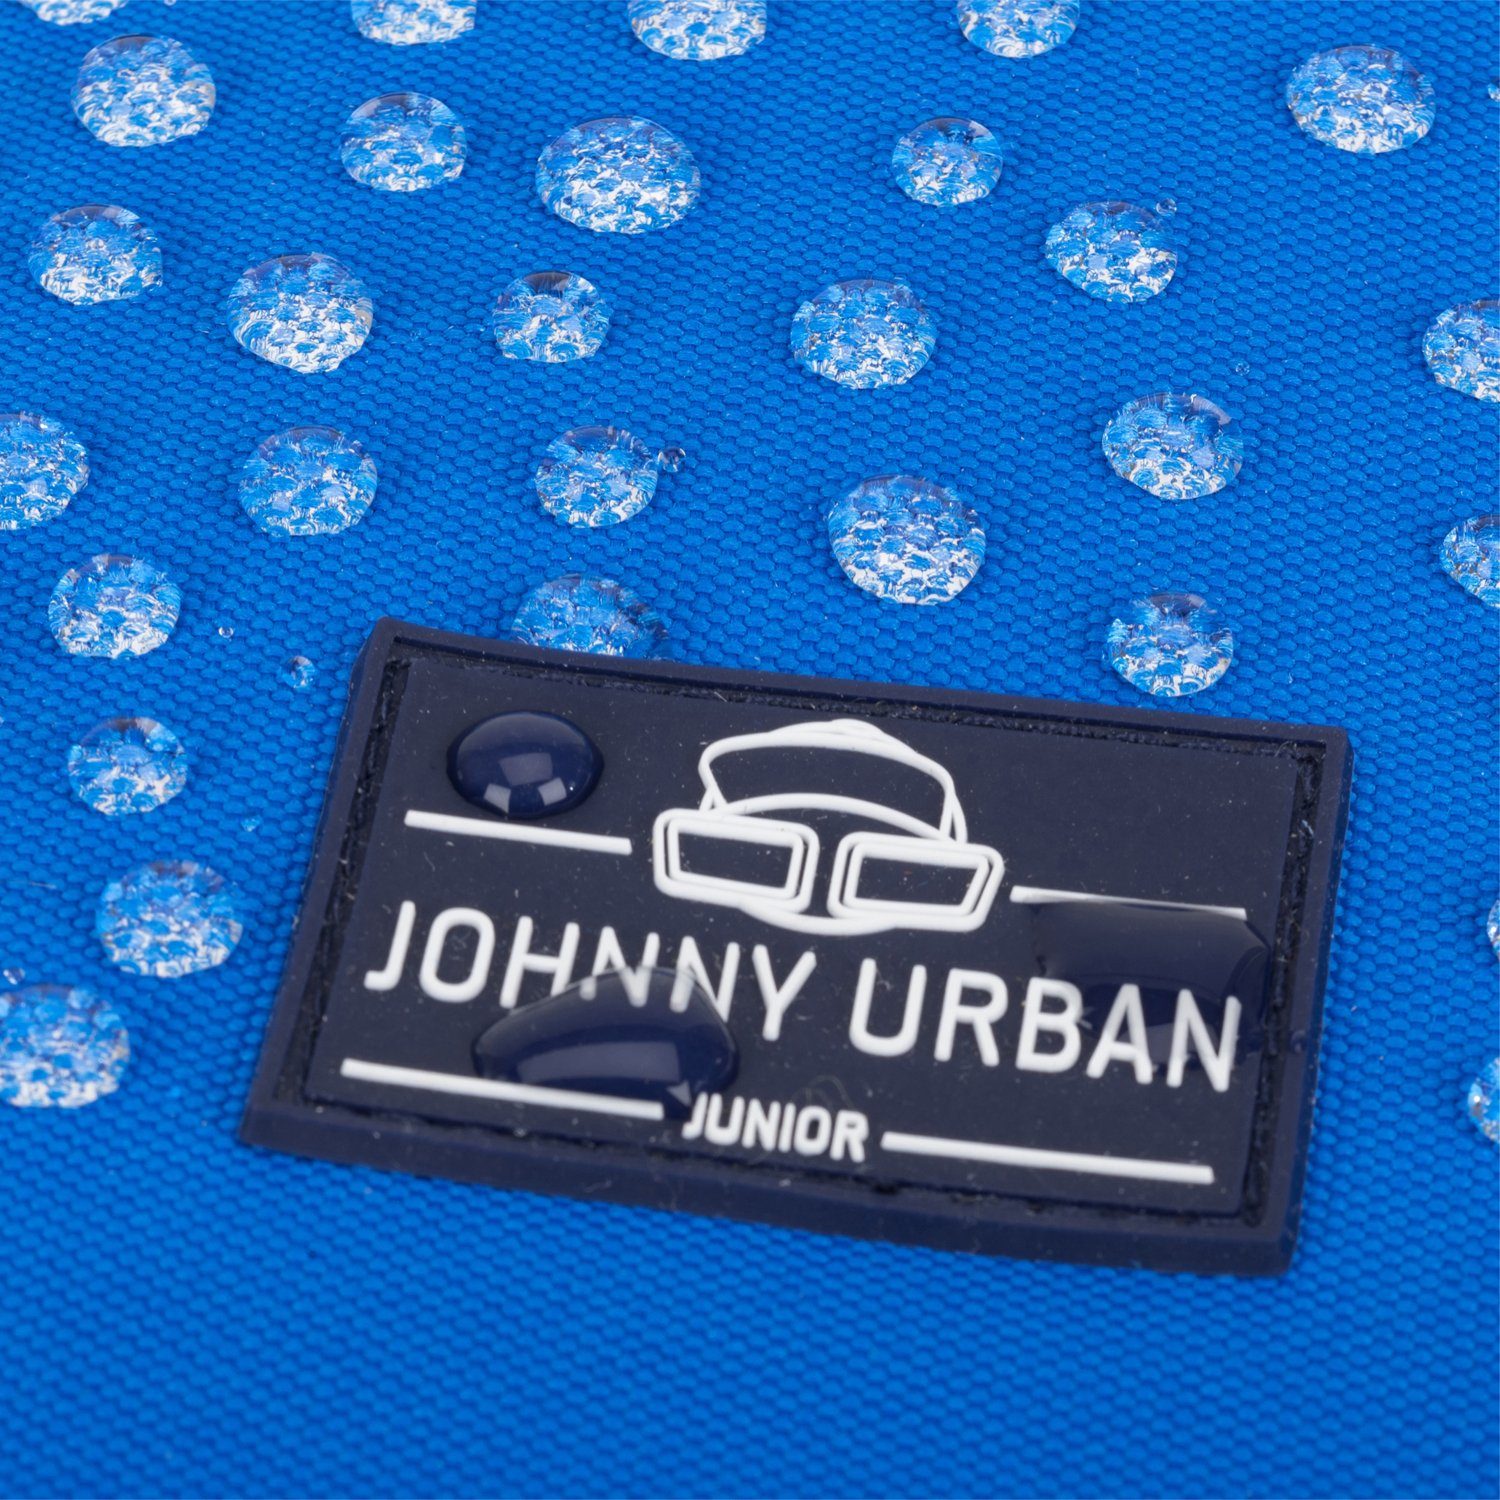 Johnny Urban Kinderrucksack Liam Polsterung, blau Recyceltes Weiche Material, Rucksack Wasserabweisend Jungen, Kinder Mädchen Junior